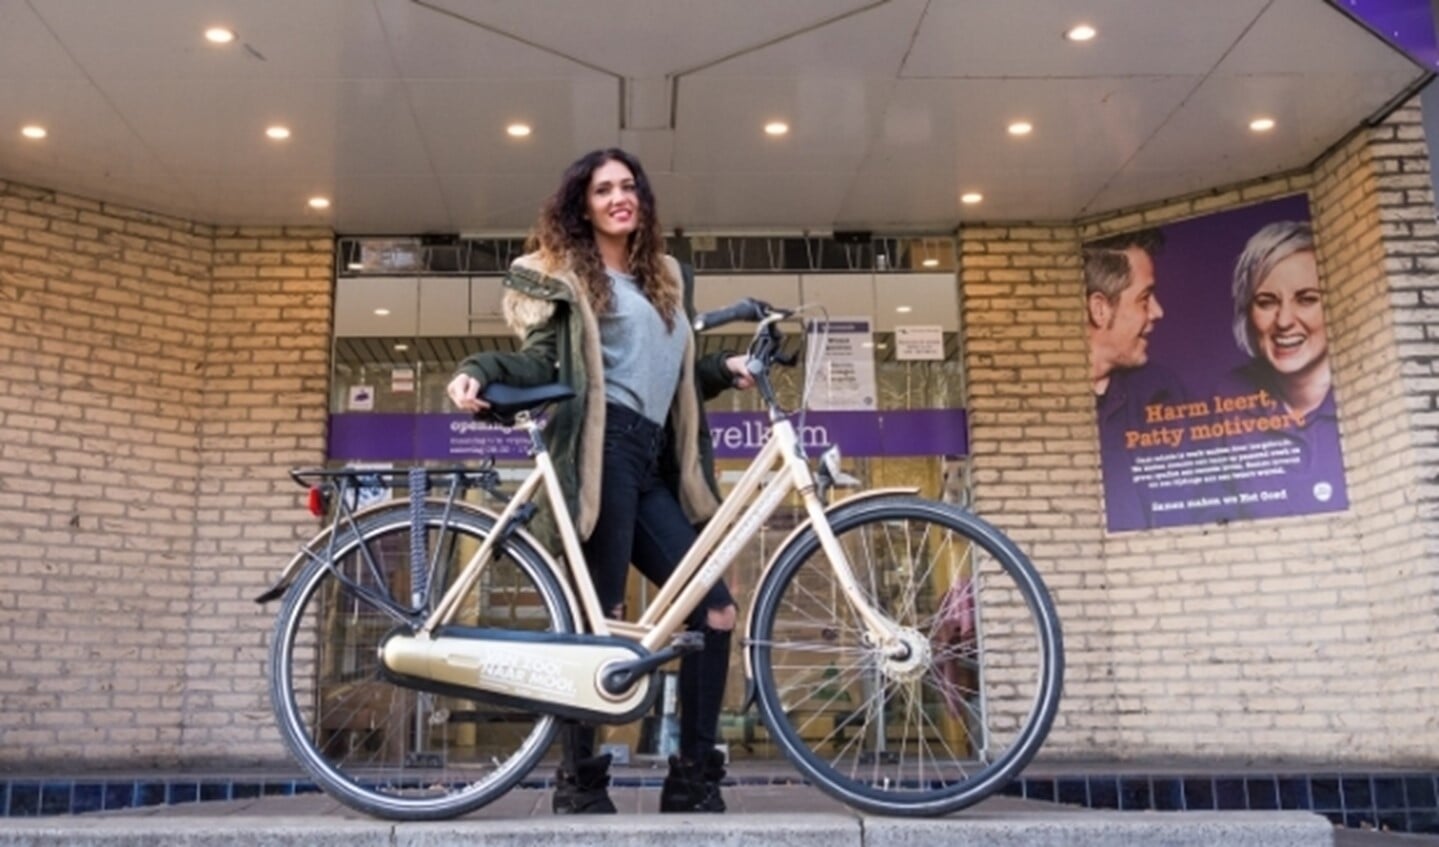 Als er één iemand vrolijk op weg is richting het jaar dat alles beter wordt, dan is dat Zinzi Melsen wel. In 2021 kun je Zinzi stralend langs zien komen, op haar gouden fiets. (Foto: Caro Linares)